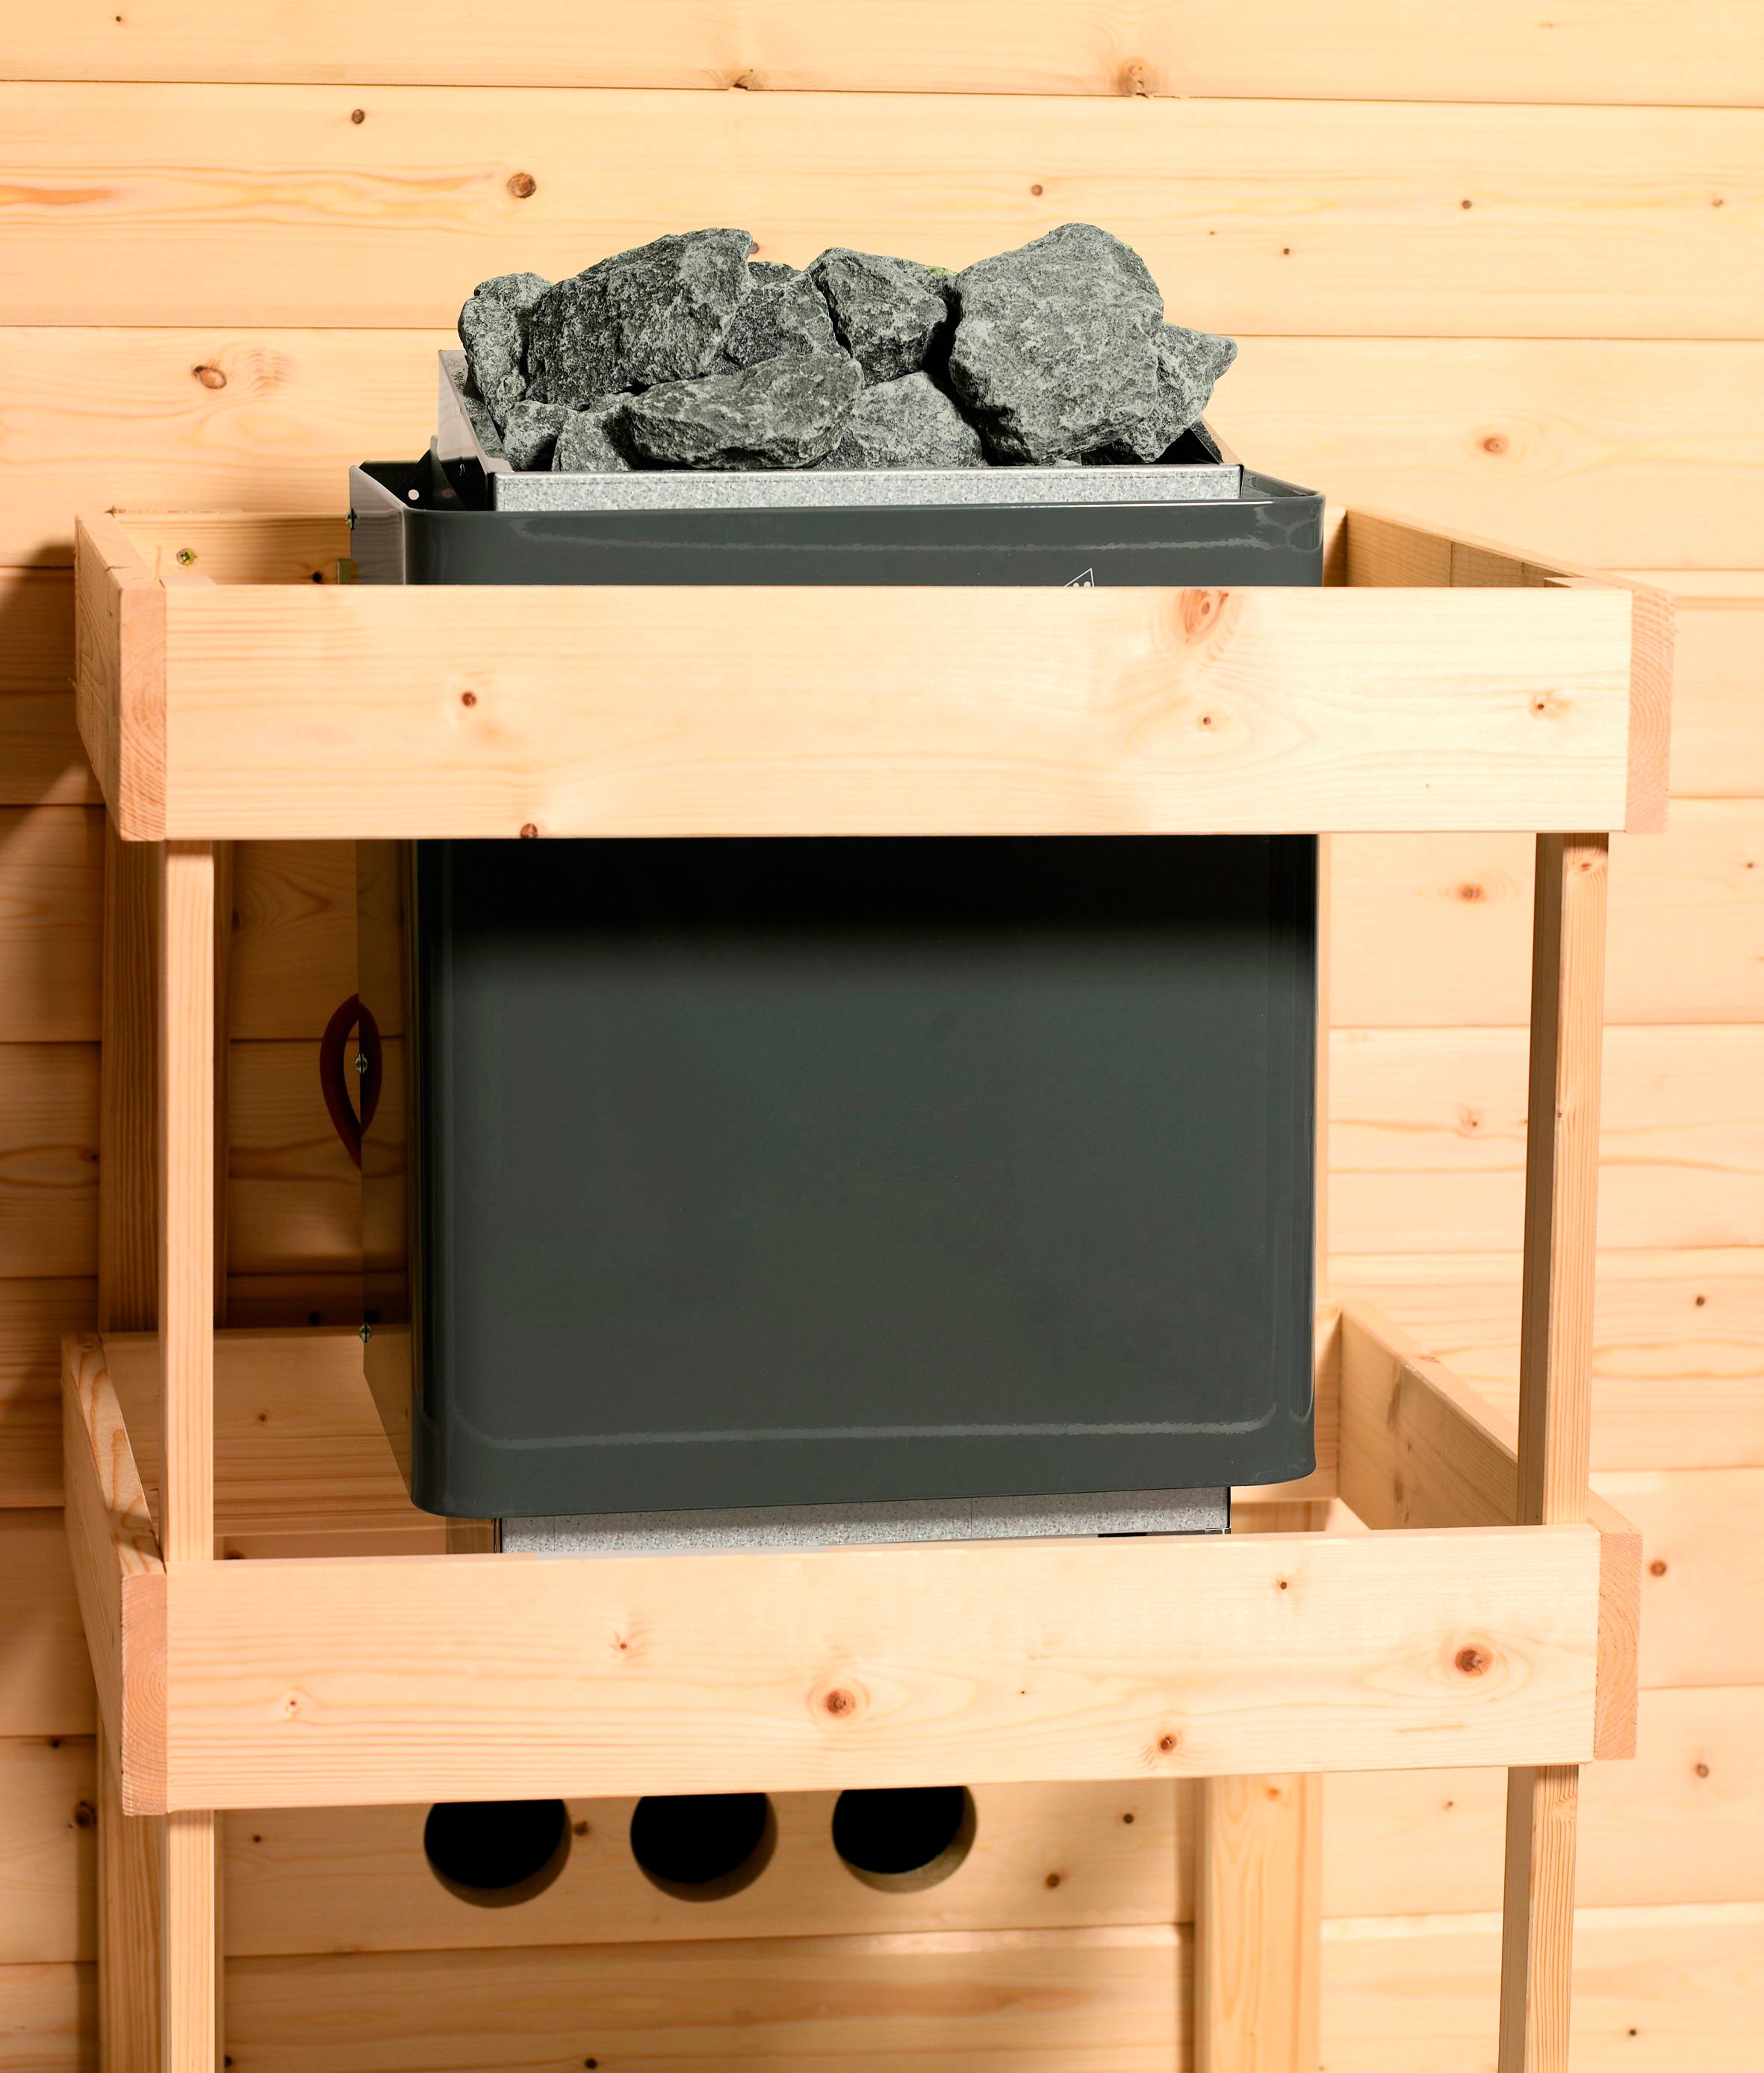 Karibu Sauna »Marit«, (Set), 9-kW-Ofen mit externer Steuerung